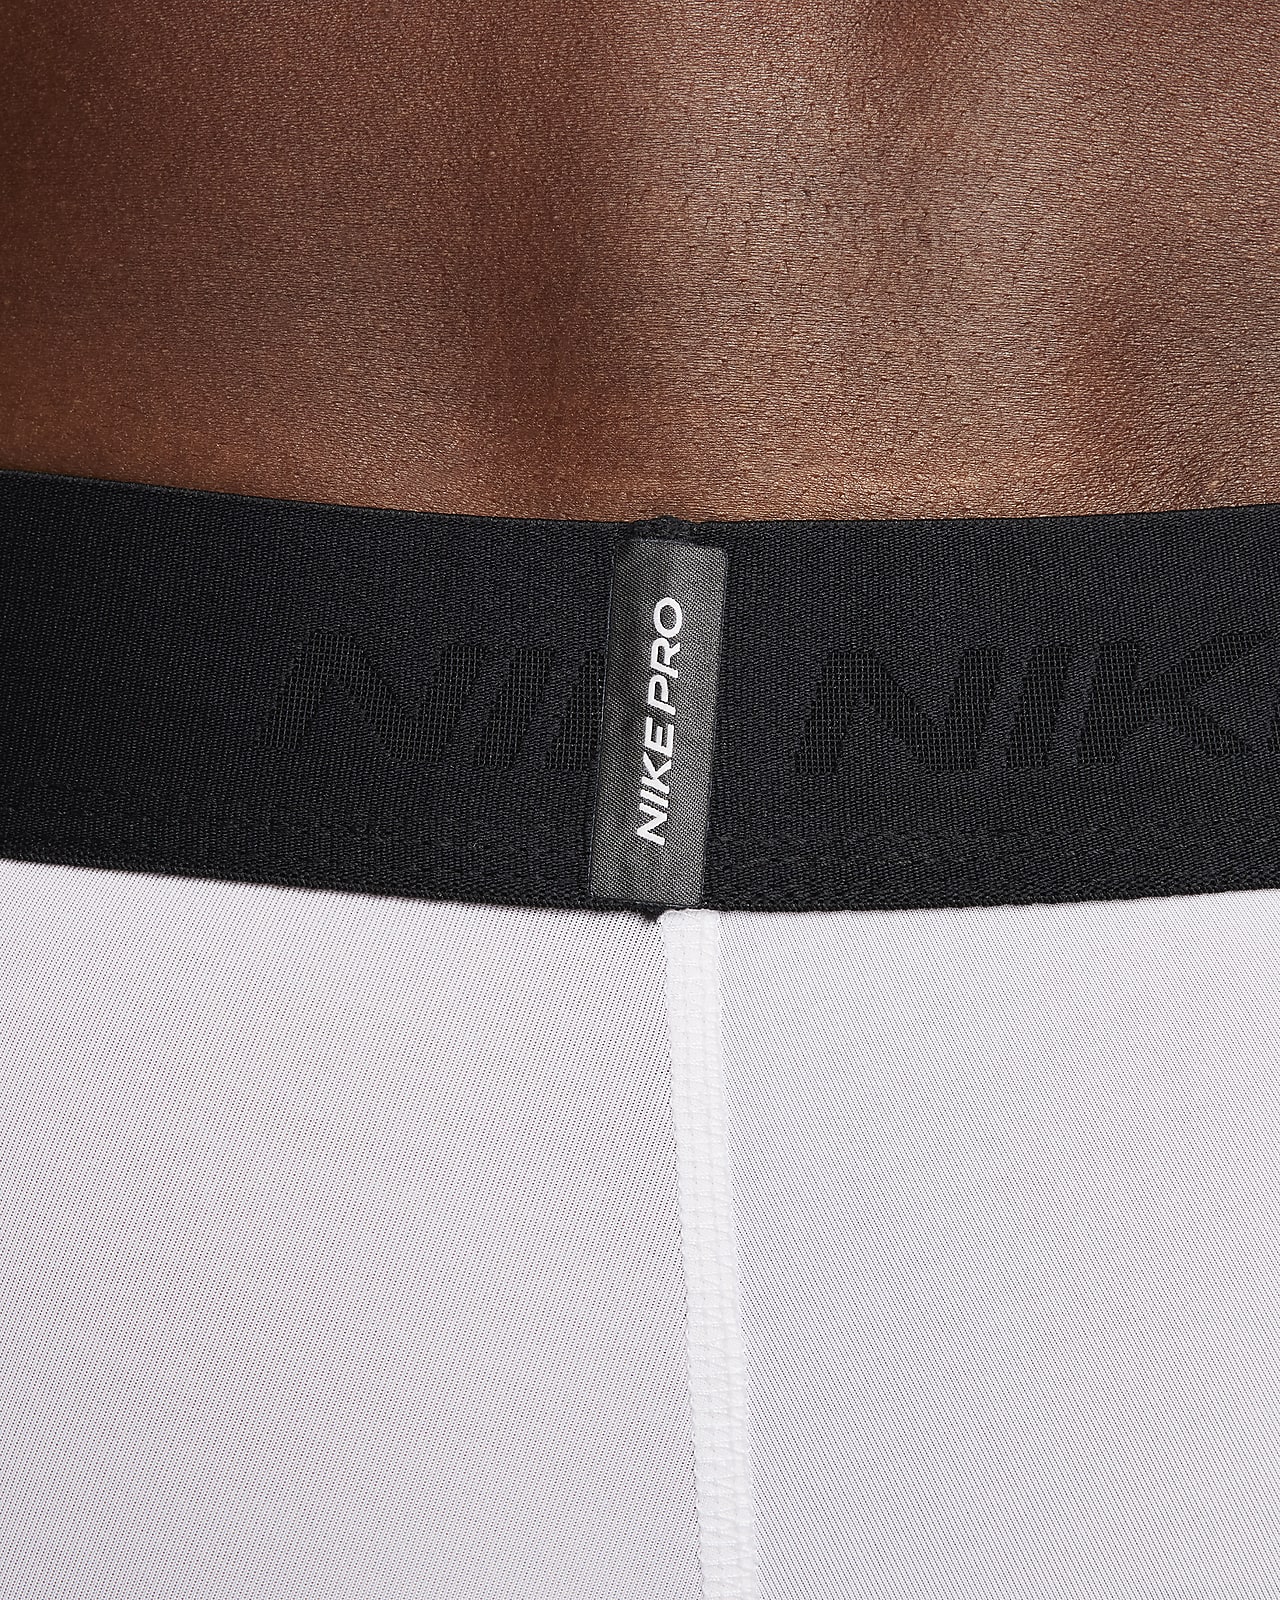 Nike Pro Men's Dri-FIT Fitness Tights.